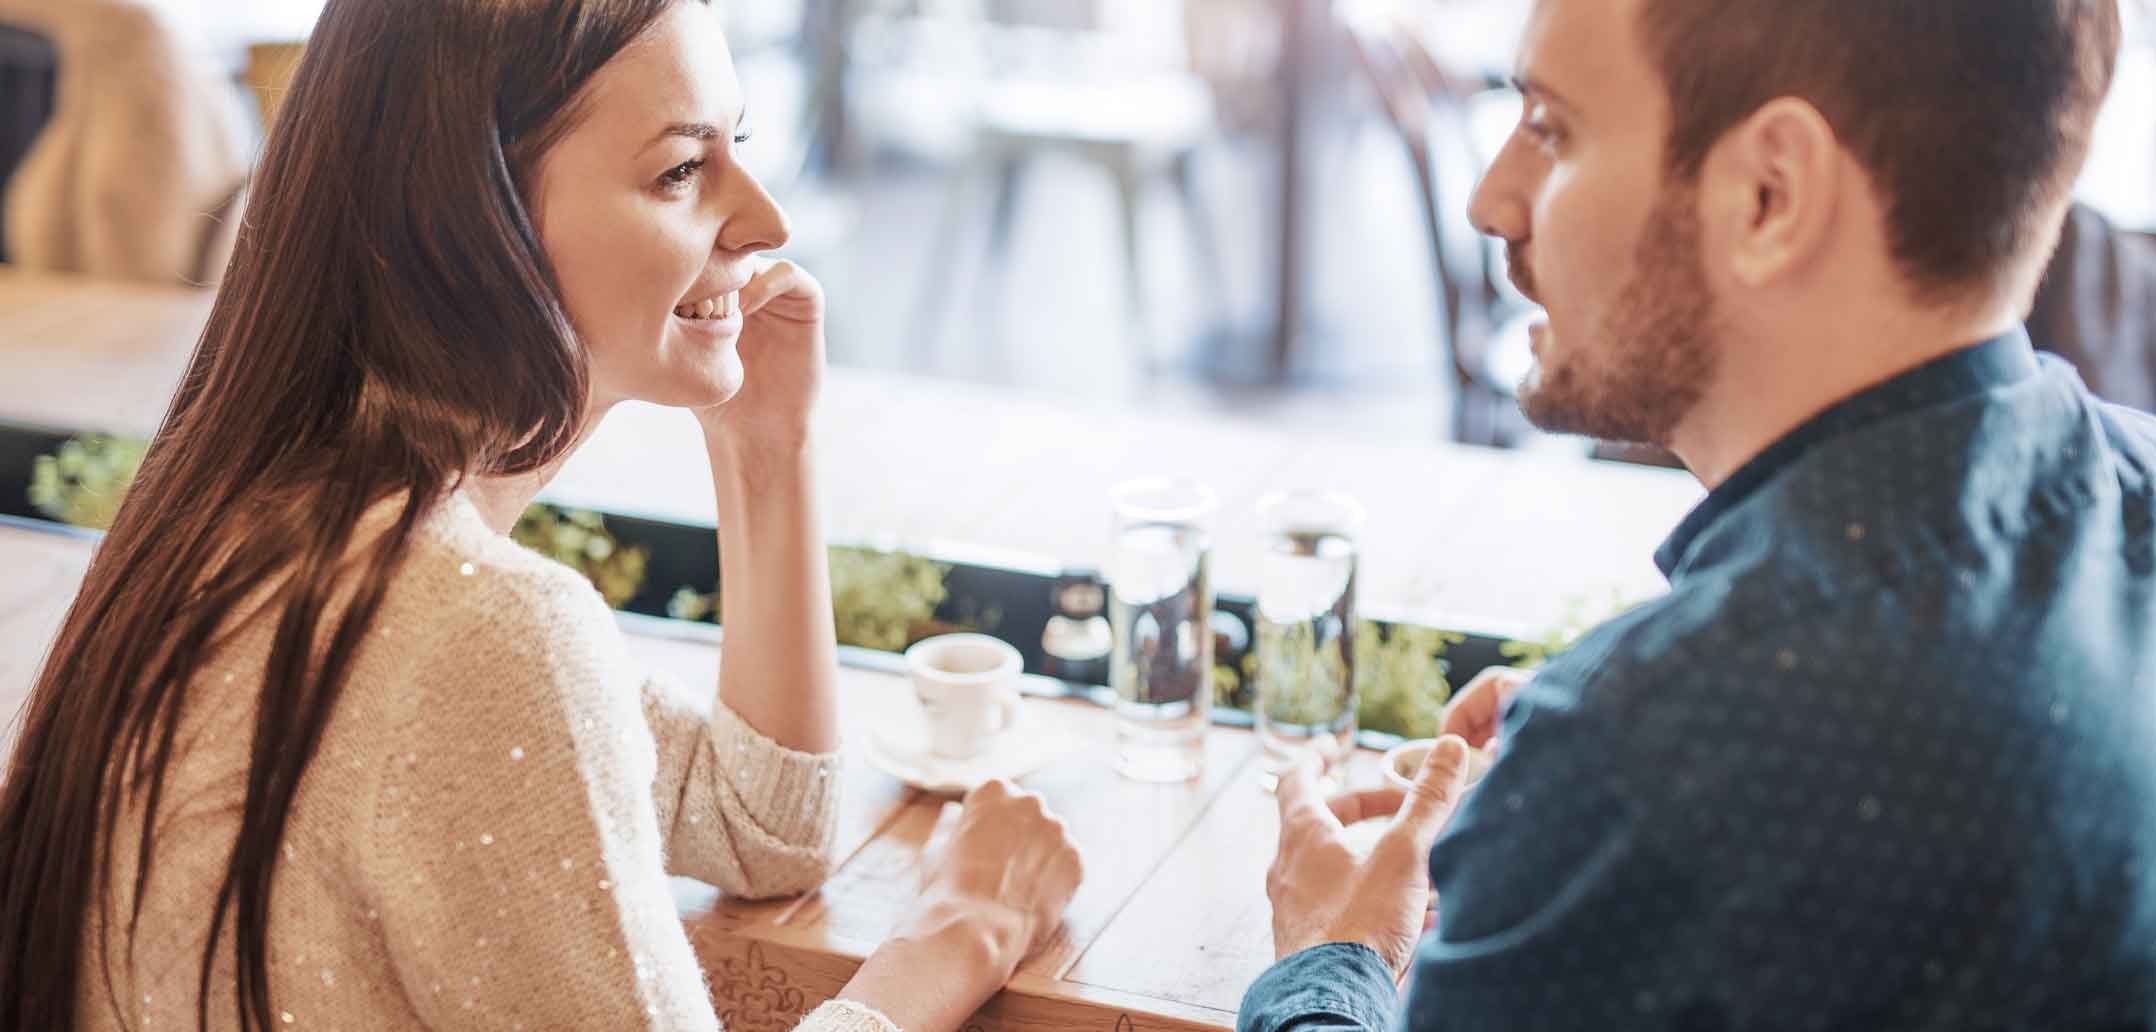 Beim Date sollten wir uns gegenseitig kennenlernen - und uns nicht nur selbst darstellen